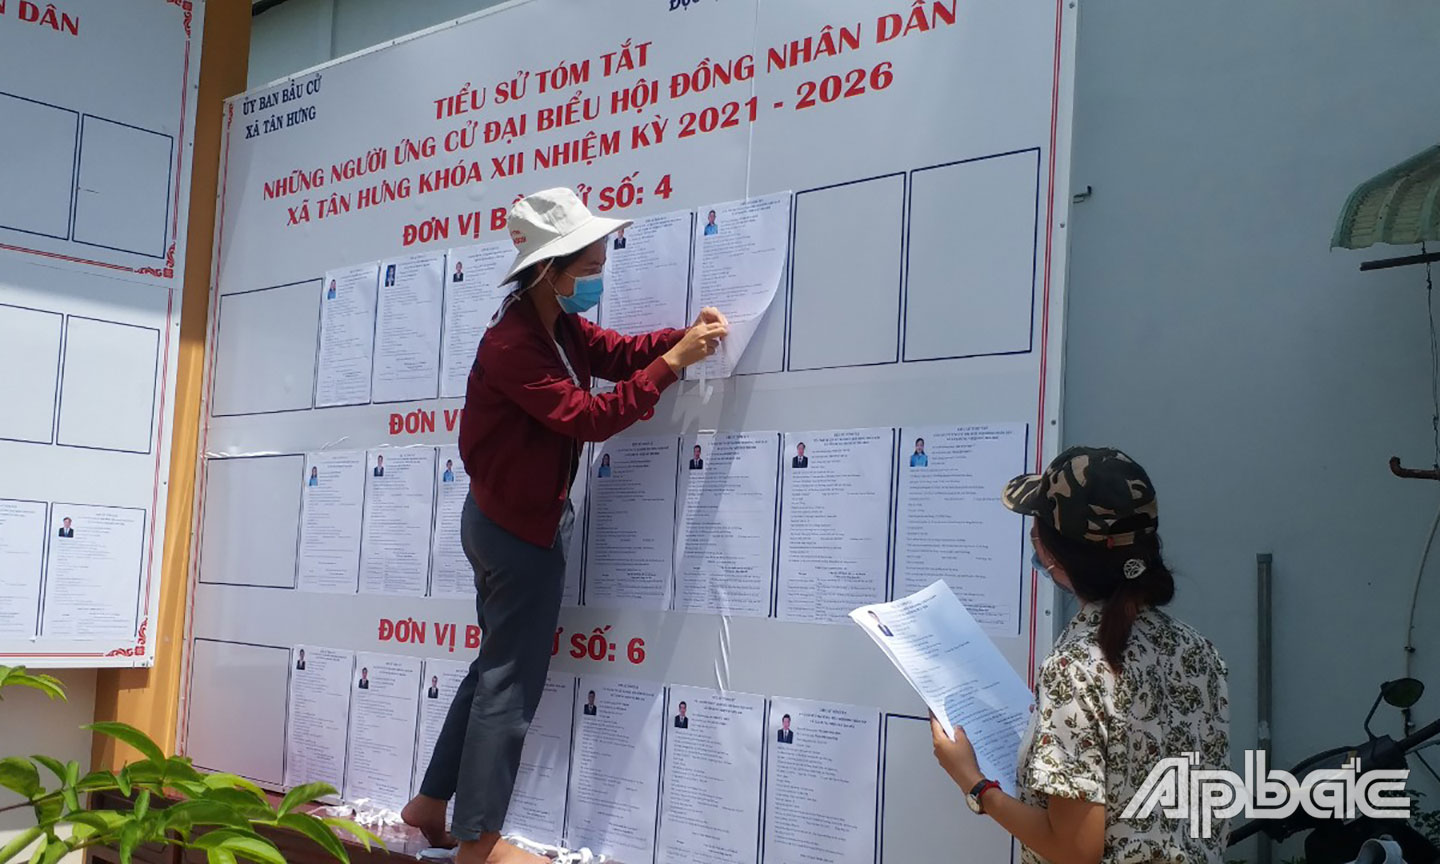 Niêm yết danh sách ứng cử viên  tại nhà văn hóa xã Tân Hưng, huyện Cái Bè.